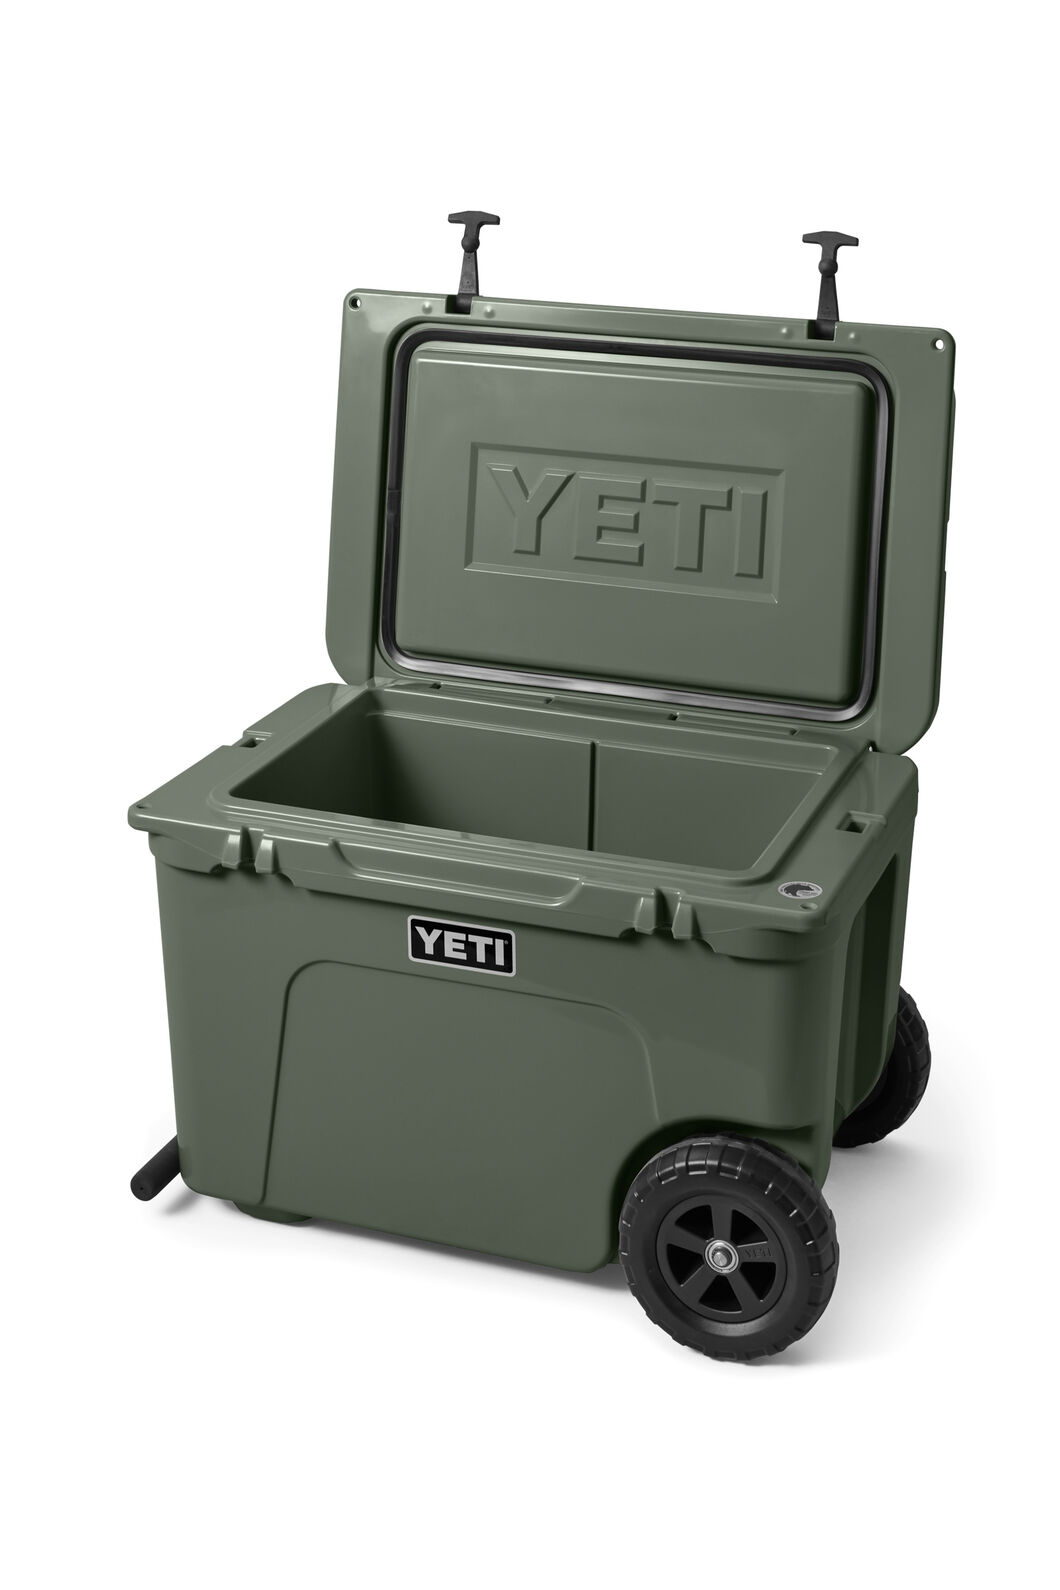 Yeti NZ - Premium Coolers & Outdoor Gear in New Zealand